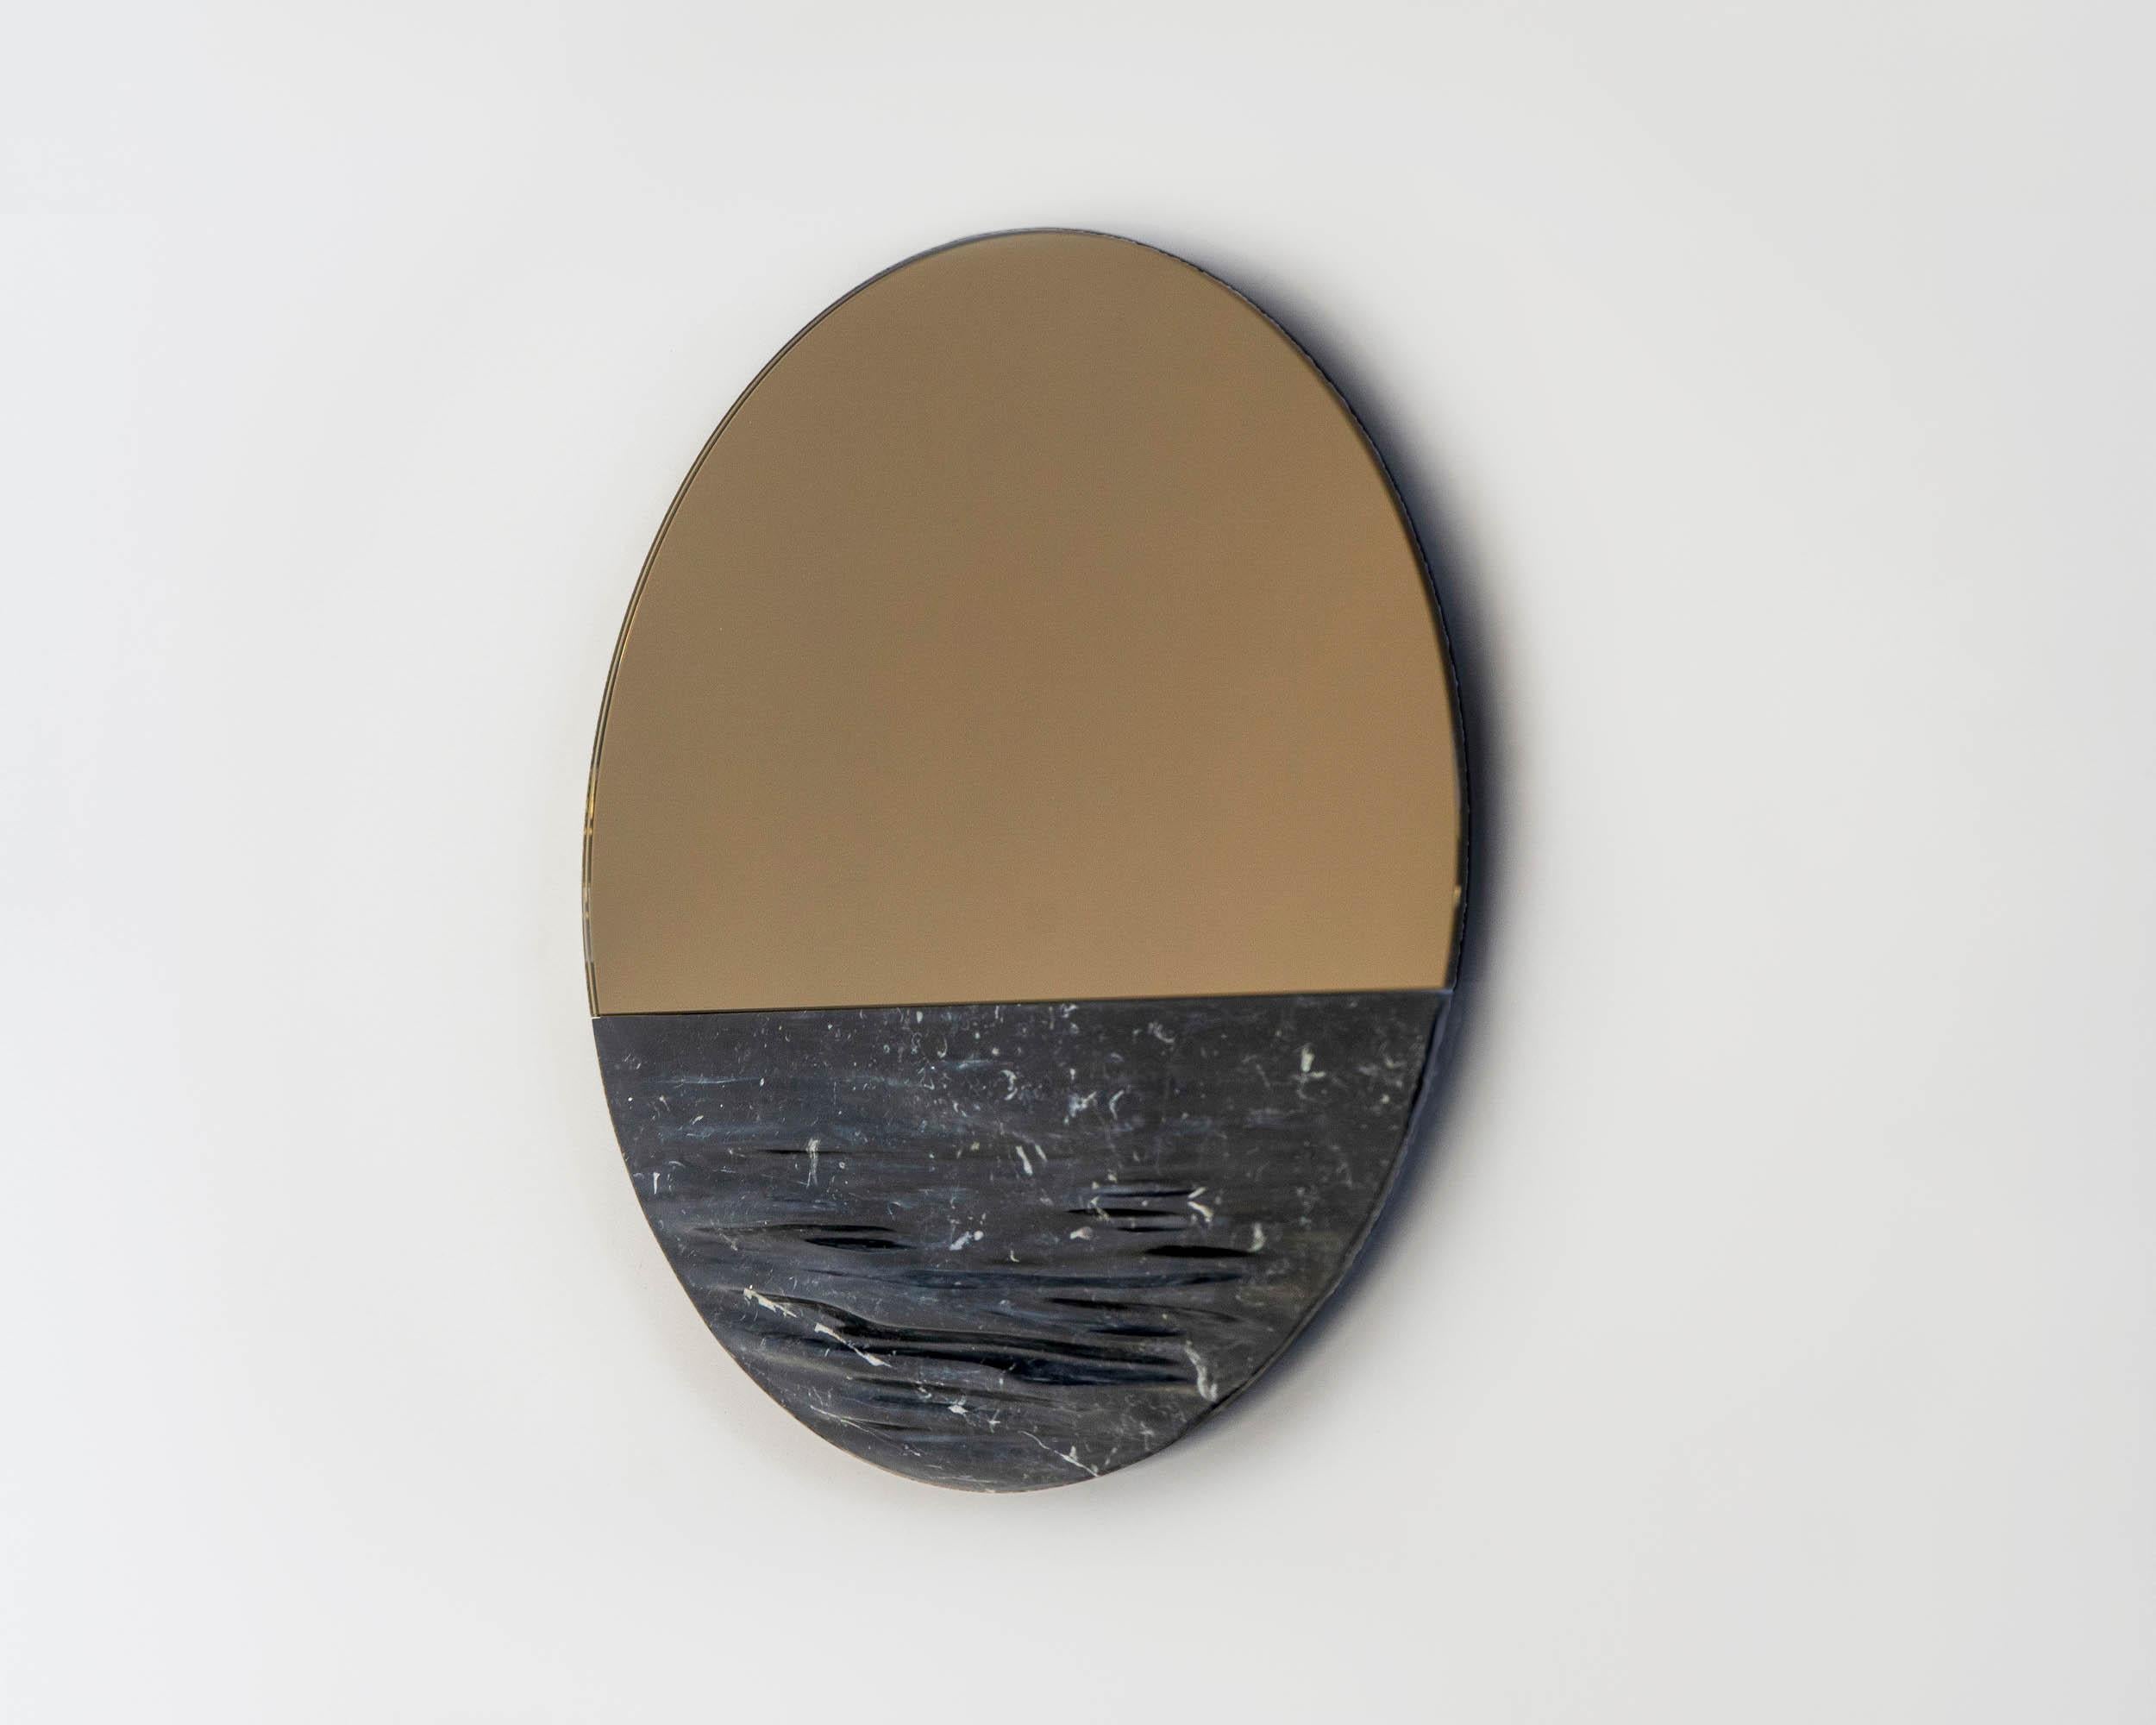 Orizon Blacksea
Miroir rond signé par Ocrùm 

Dimensions : 31.5 x 1.75 in
Matériaux : Marbre sculpté, miroir en verre
Couleurs : Noir Marquina, bronze / gris miroir
Personnalisation : La teinte du verre, la finition du cadre et la taille peuvent